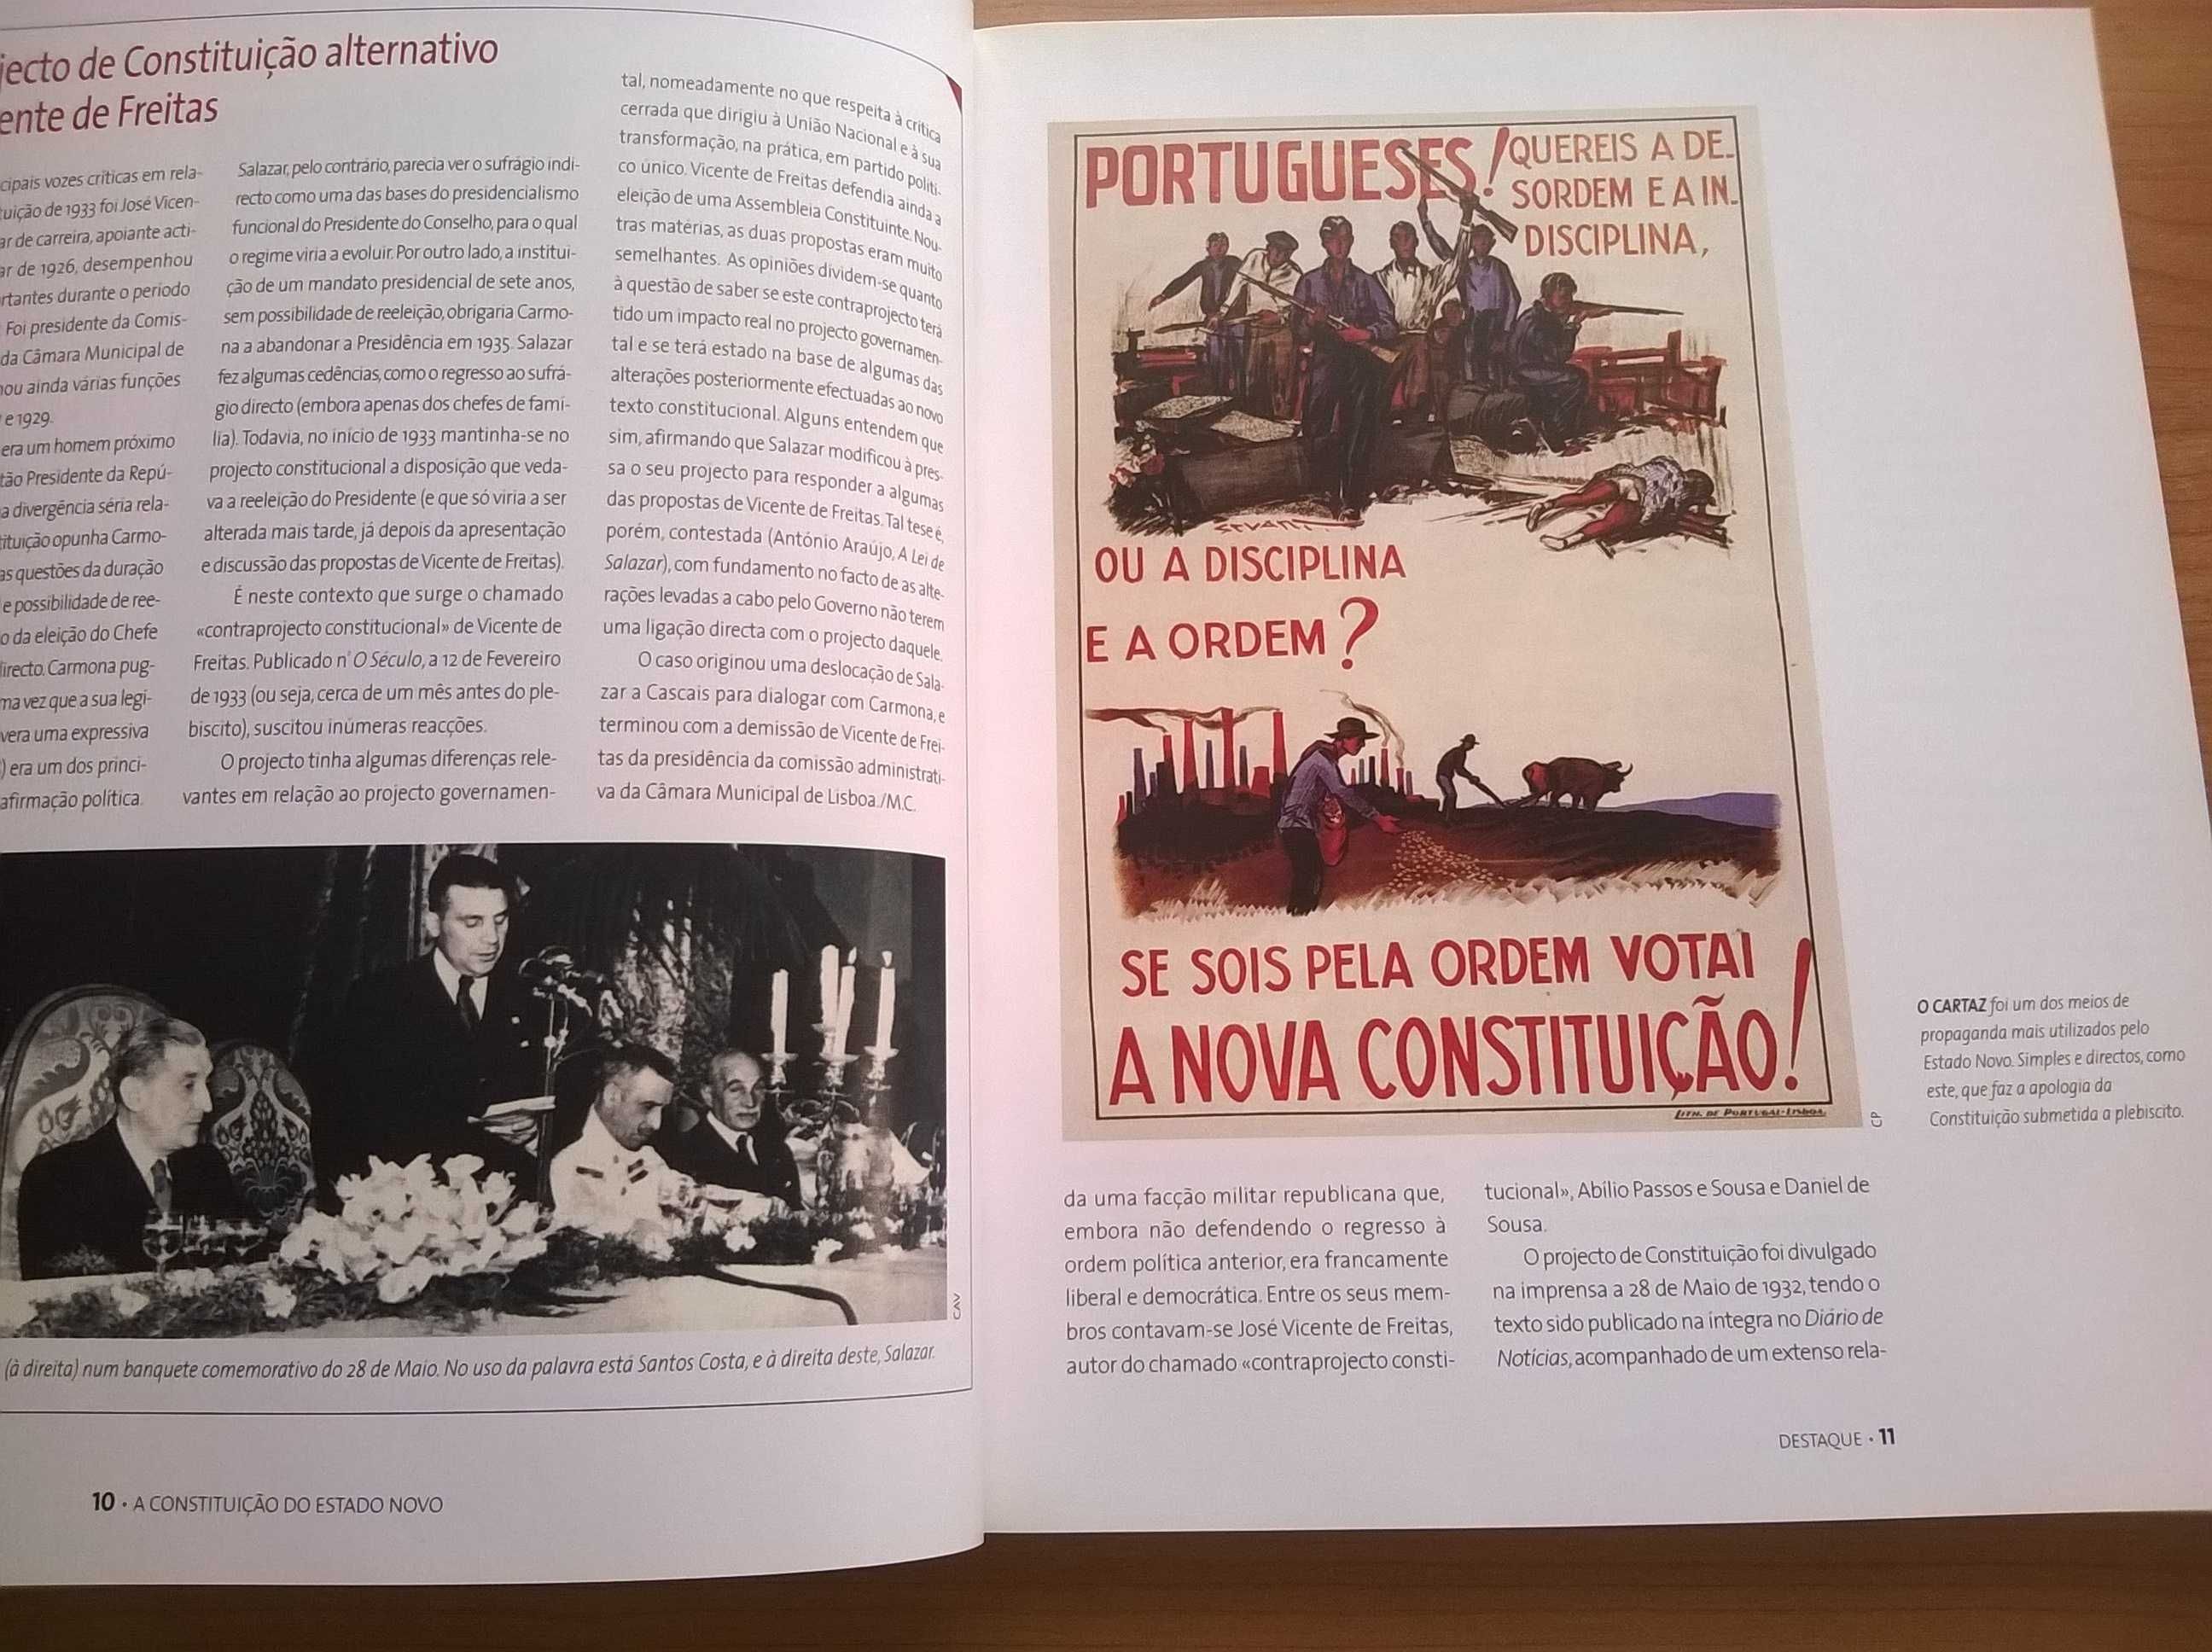 Os Anos de Salazar vol. 2 (1933) - A Constituição do Estado Novo